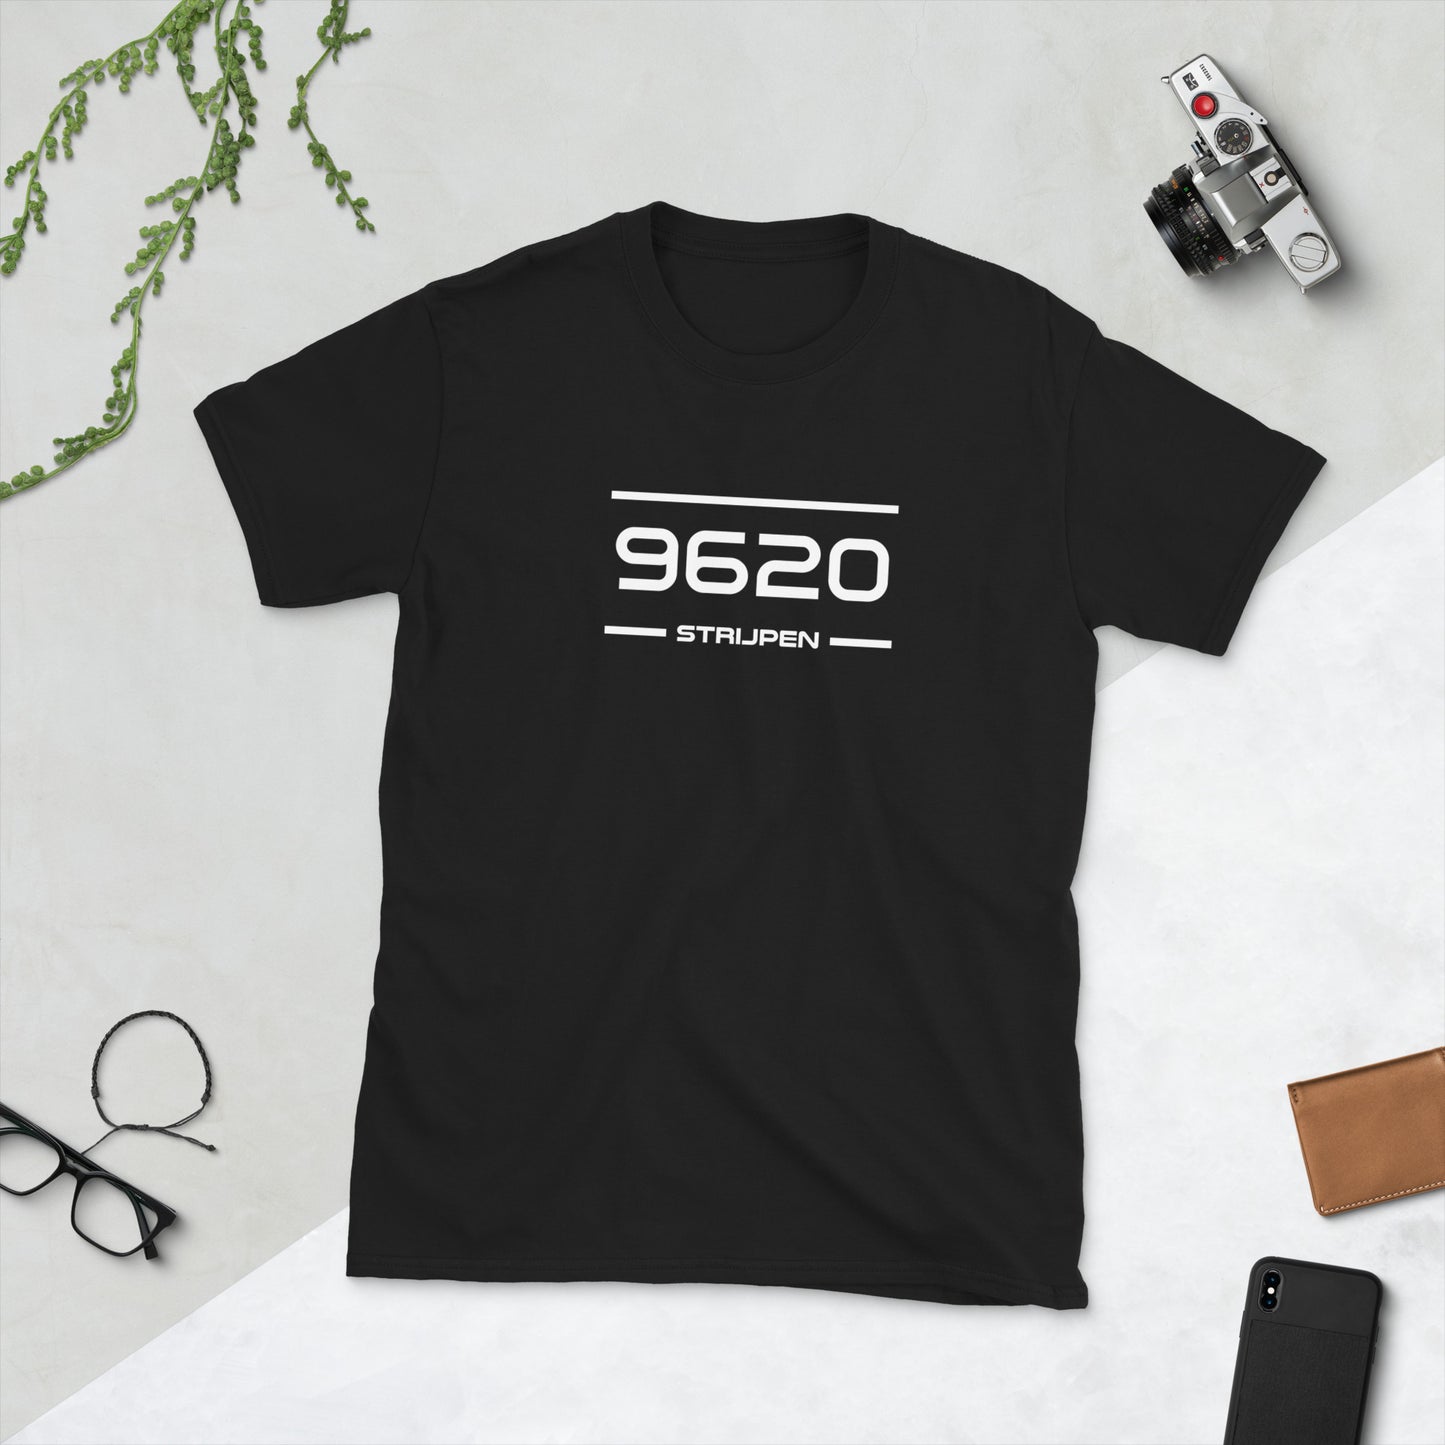 T-Shirt - 9620 - Strijpen